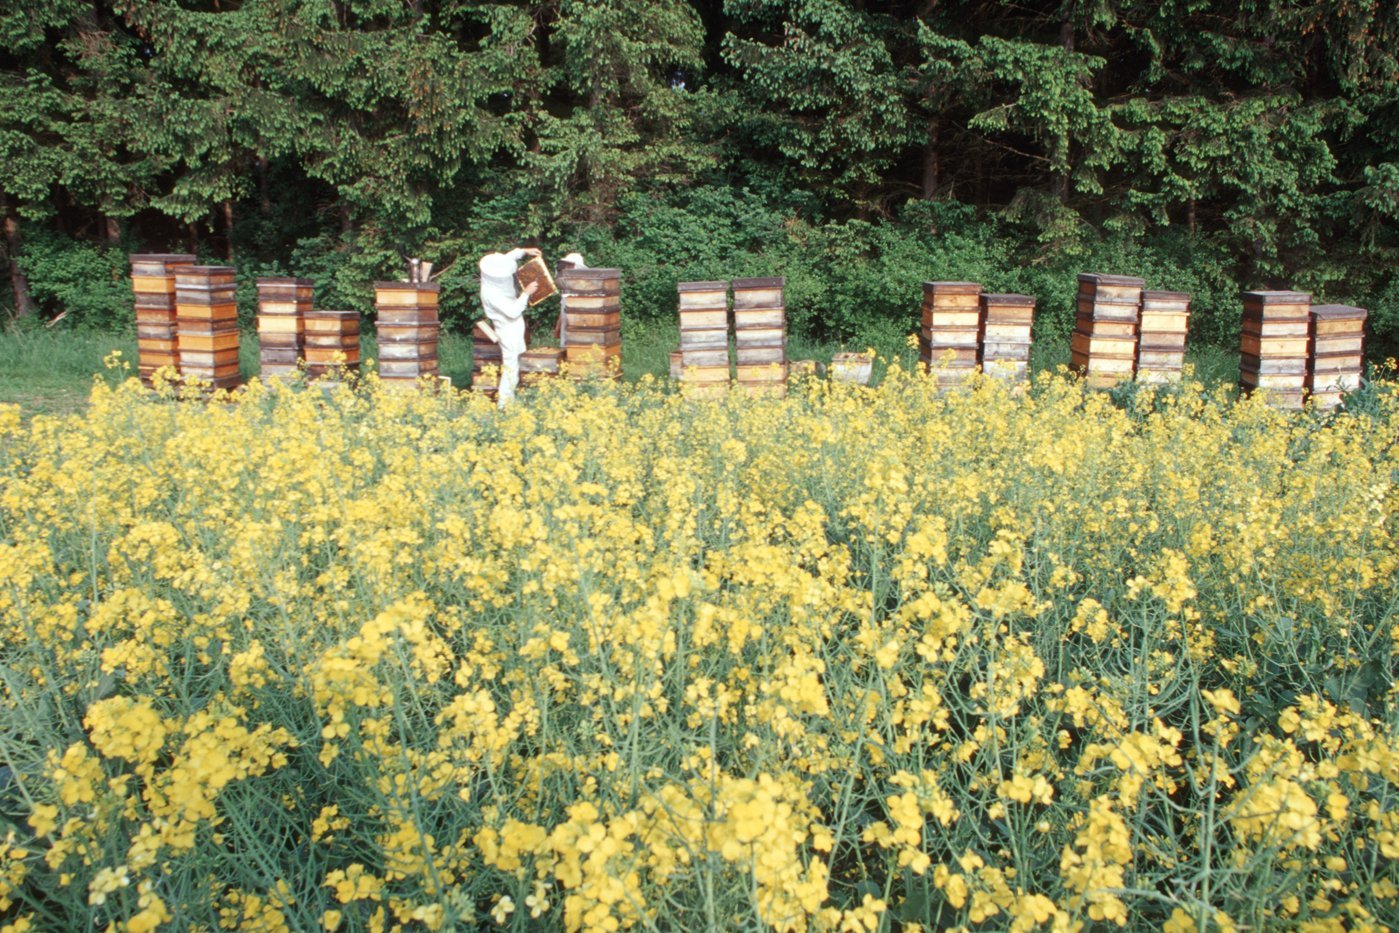 Bienenstöcke am Rapsfeld. Klick führt zu Großansicht in neuem Fenster.